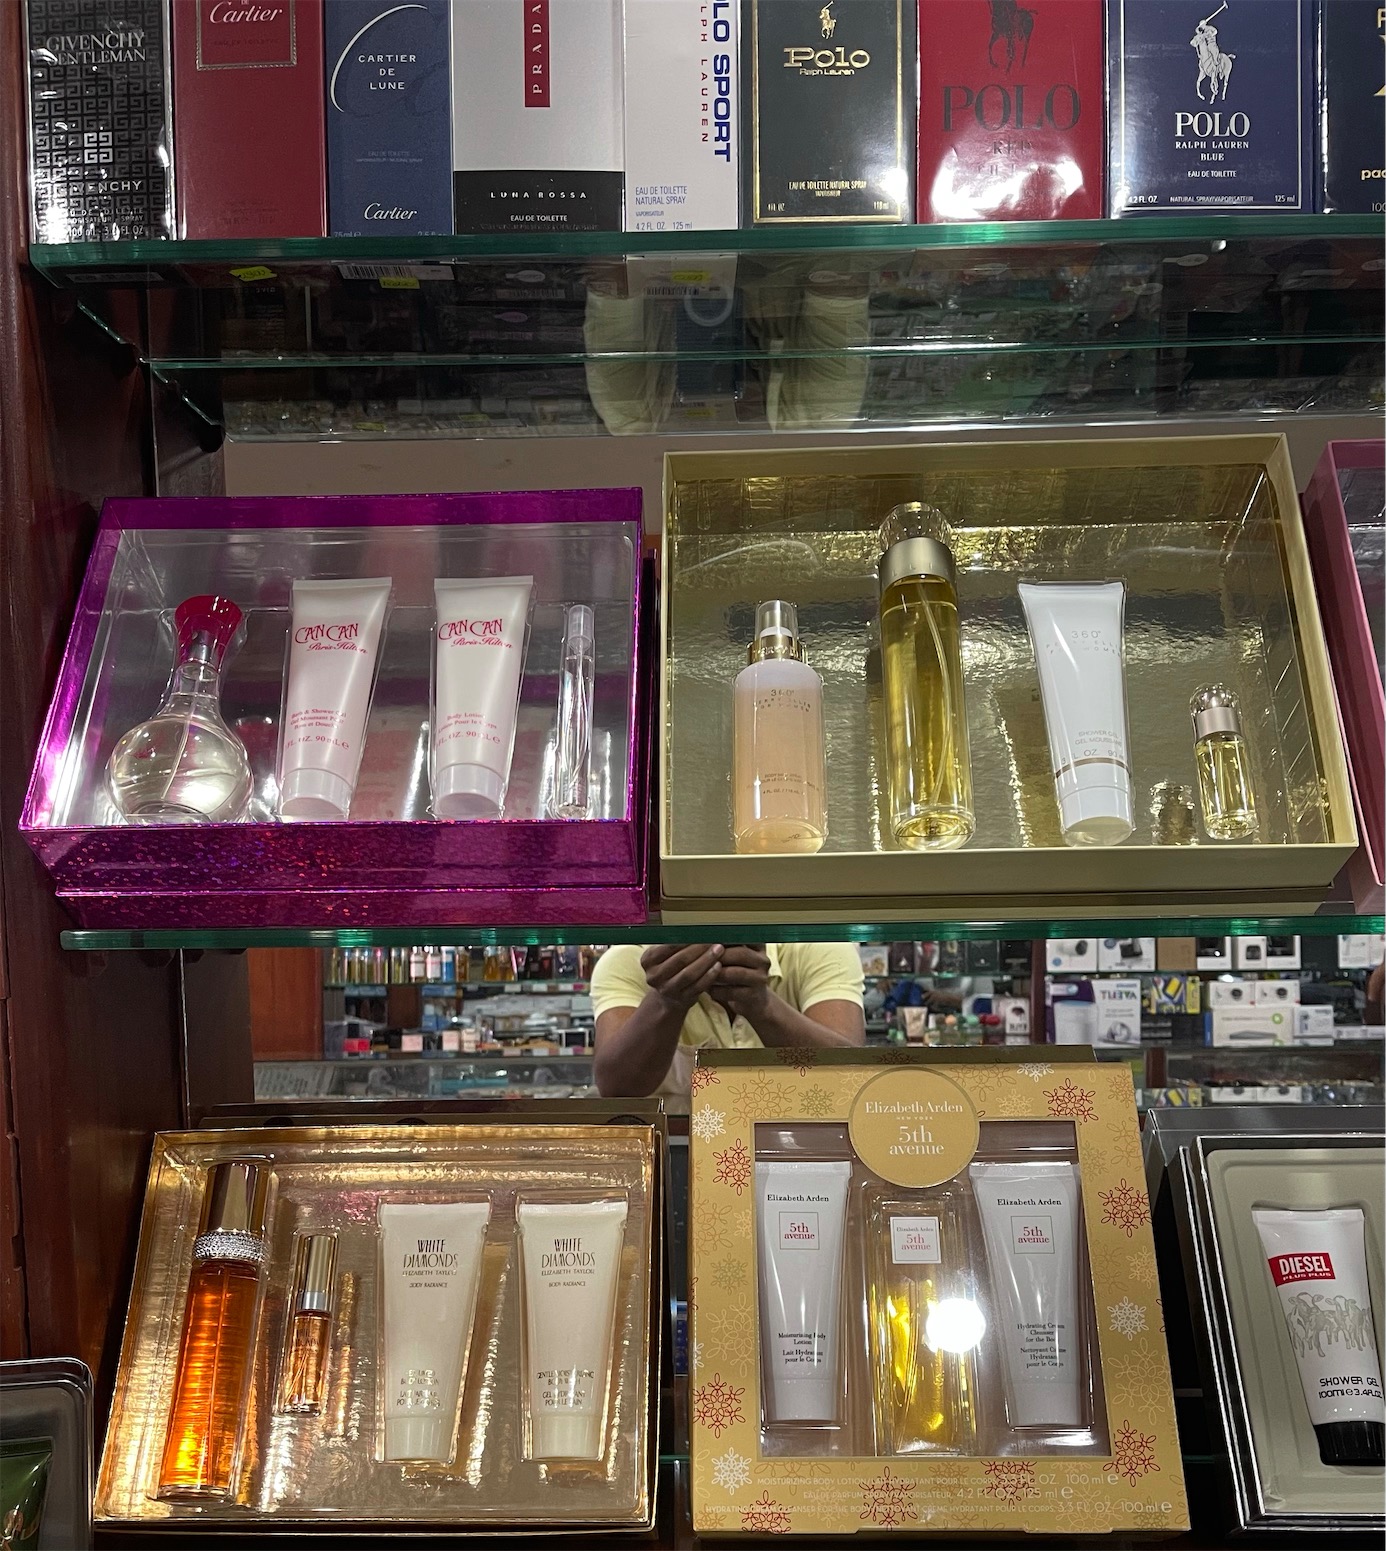 Set perfume completo para Mujeres. AL POR MAYOR Y AL DETALLE